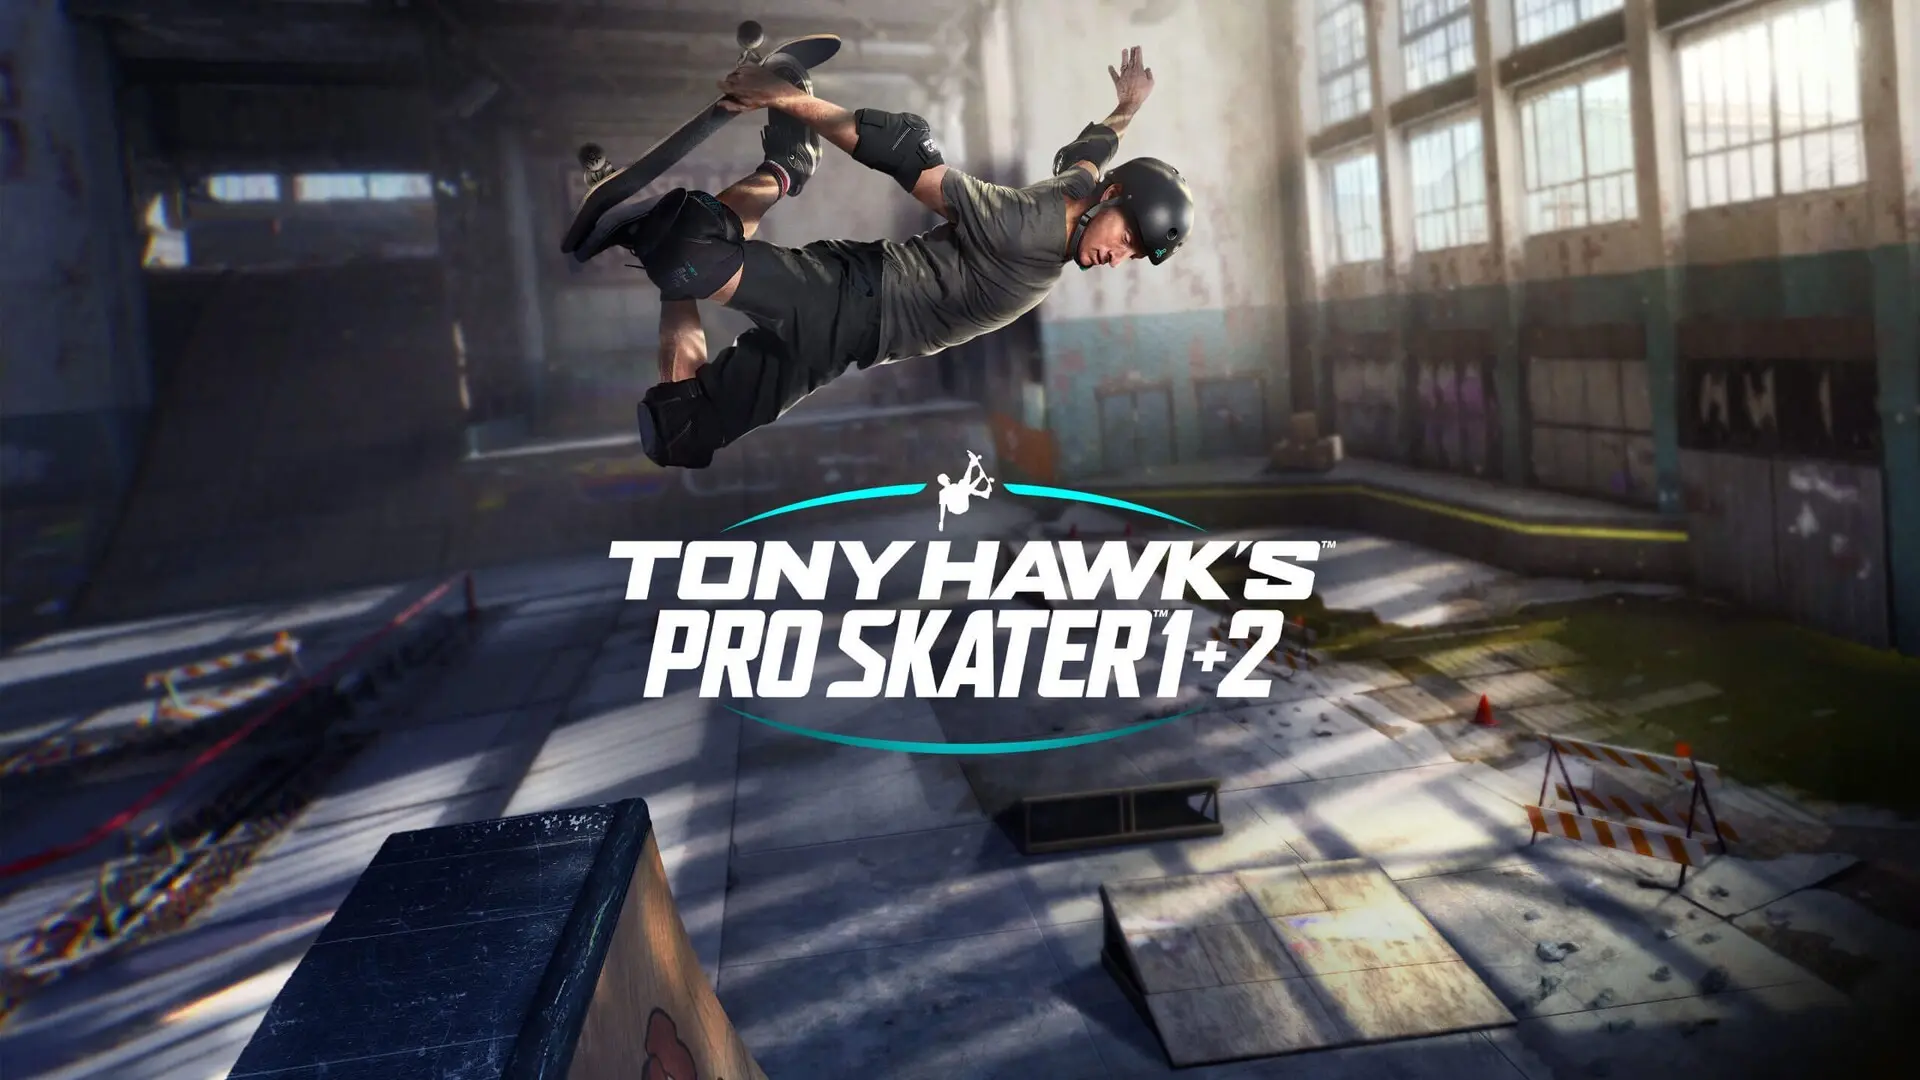 È disponibile una versione di prova gratuita di Tony Hawk's Pro Skater 1 + 2